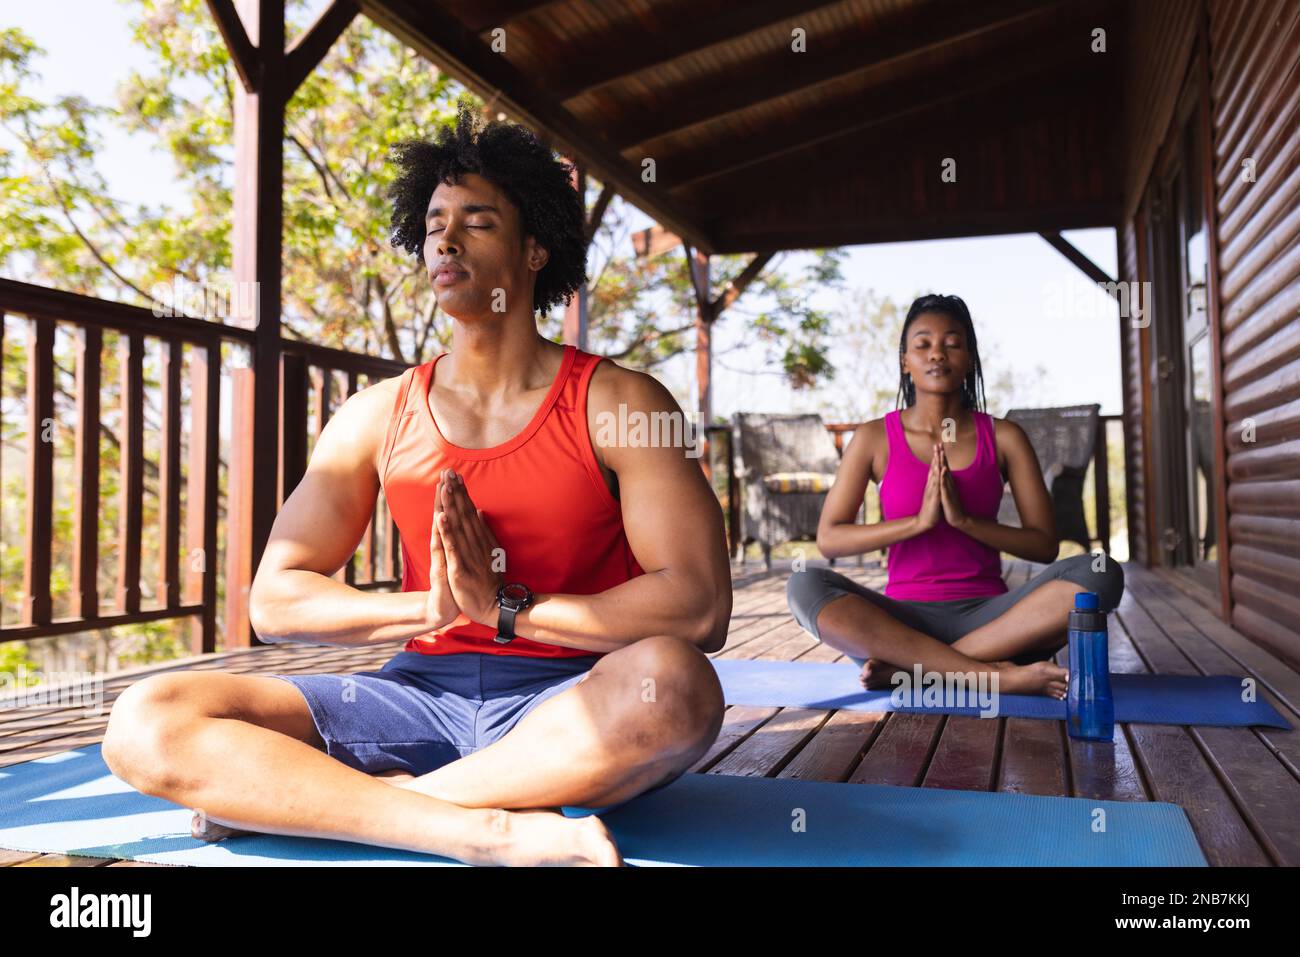 Ein afroamerikanisches Paar, das in einer Blockhütte Yoga auf Yoga-Matten praktiziert. Blockhütte, Natur- und Lifestyle-Konzept. Stockfoto